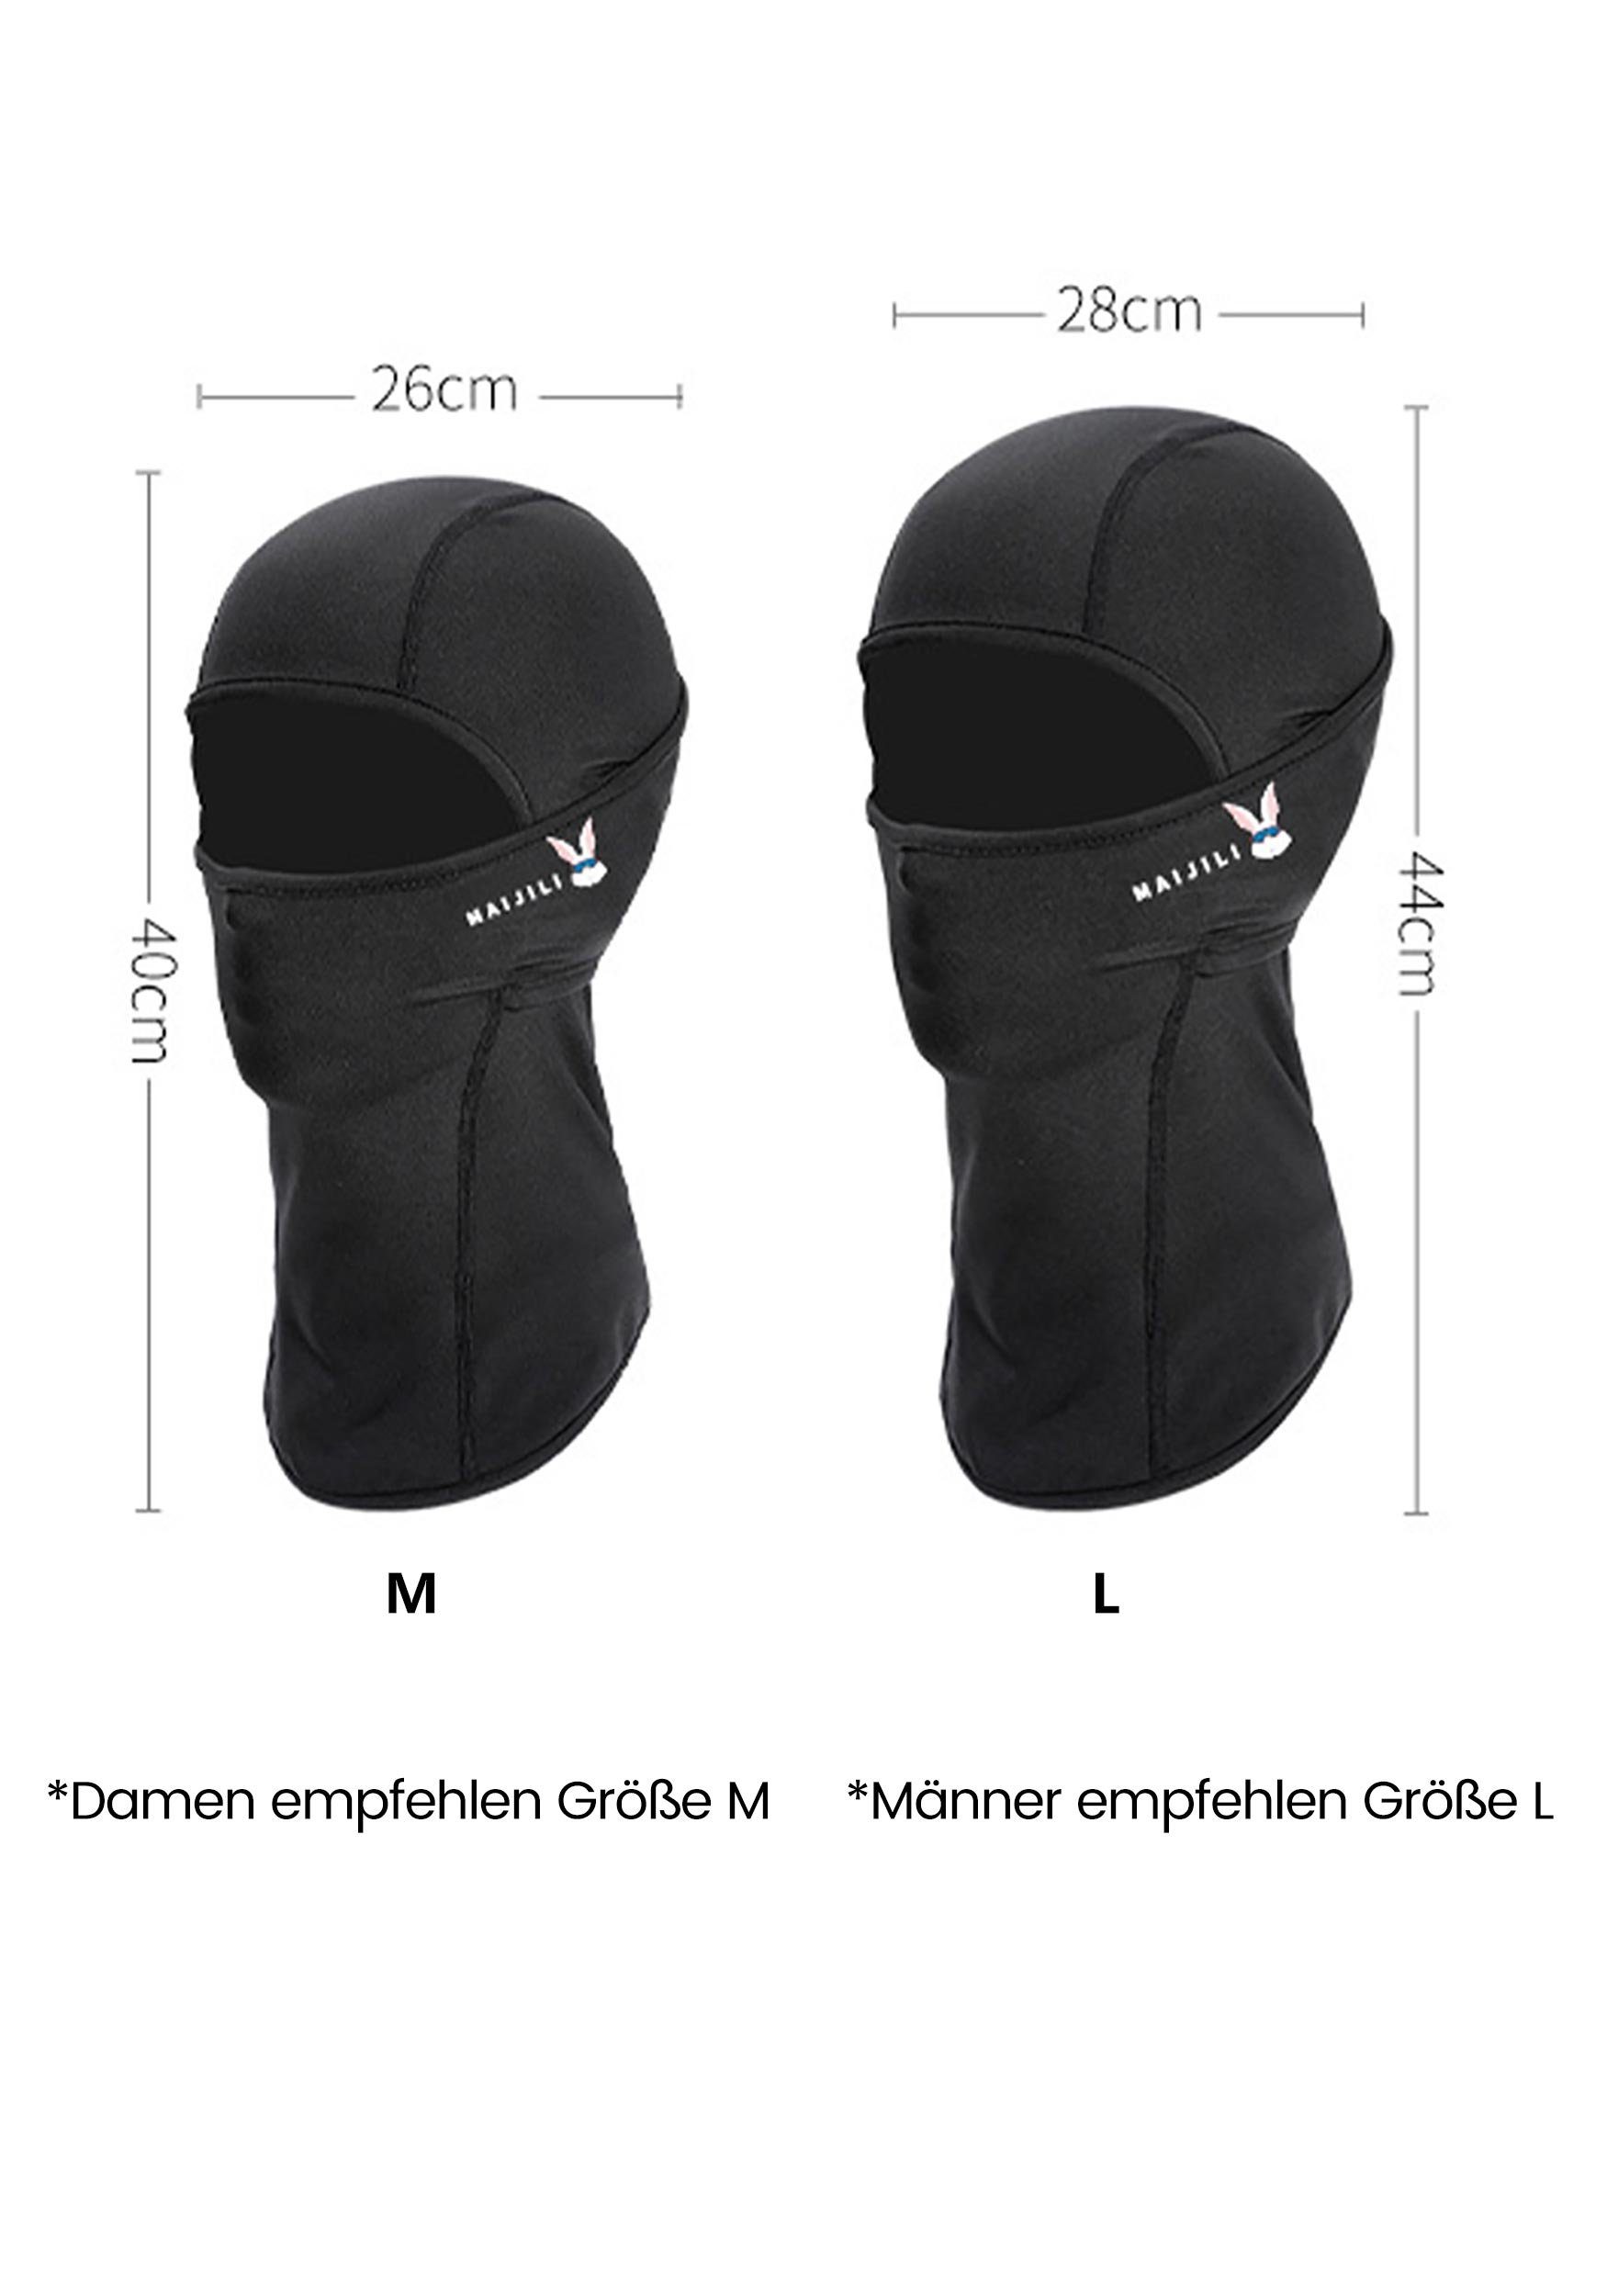 Schutz Schwarz MAGICSHE Skimaske Widersteht für Sturmhaube UV-Strahlen Umfassenden